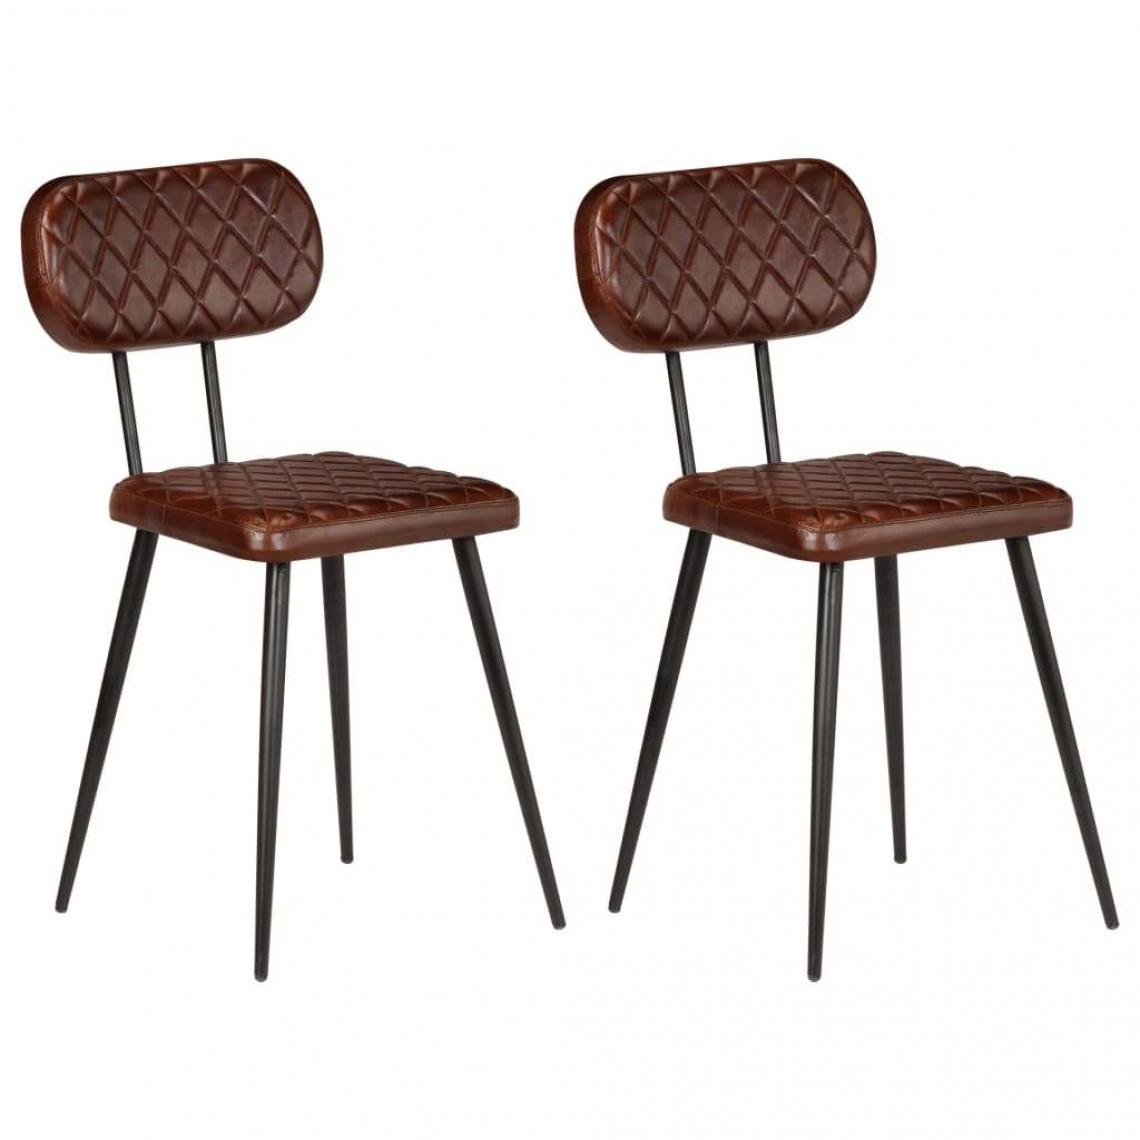 Decoshop26 - Lot de 2 chaises de salle à manger cuisine design vintage cuir véritable marron CDS020685 - Chaises